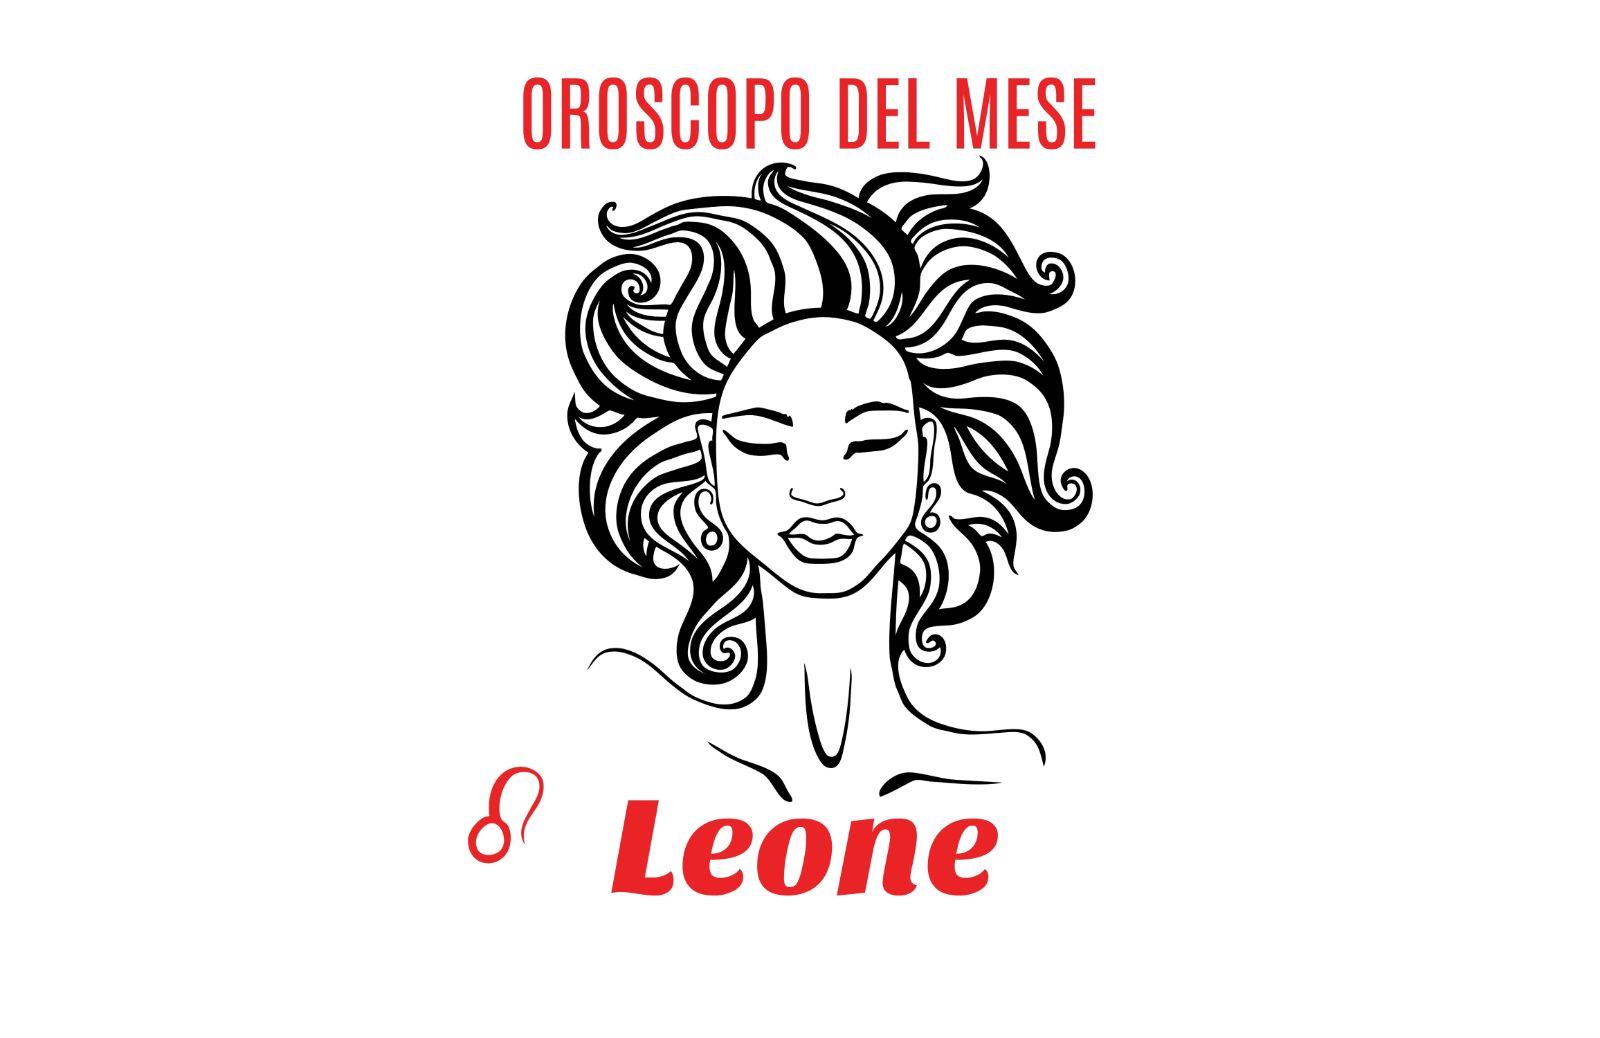 Oroscopo del mese: Leone - agosto 2018